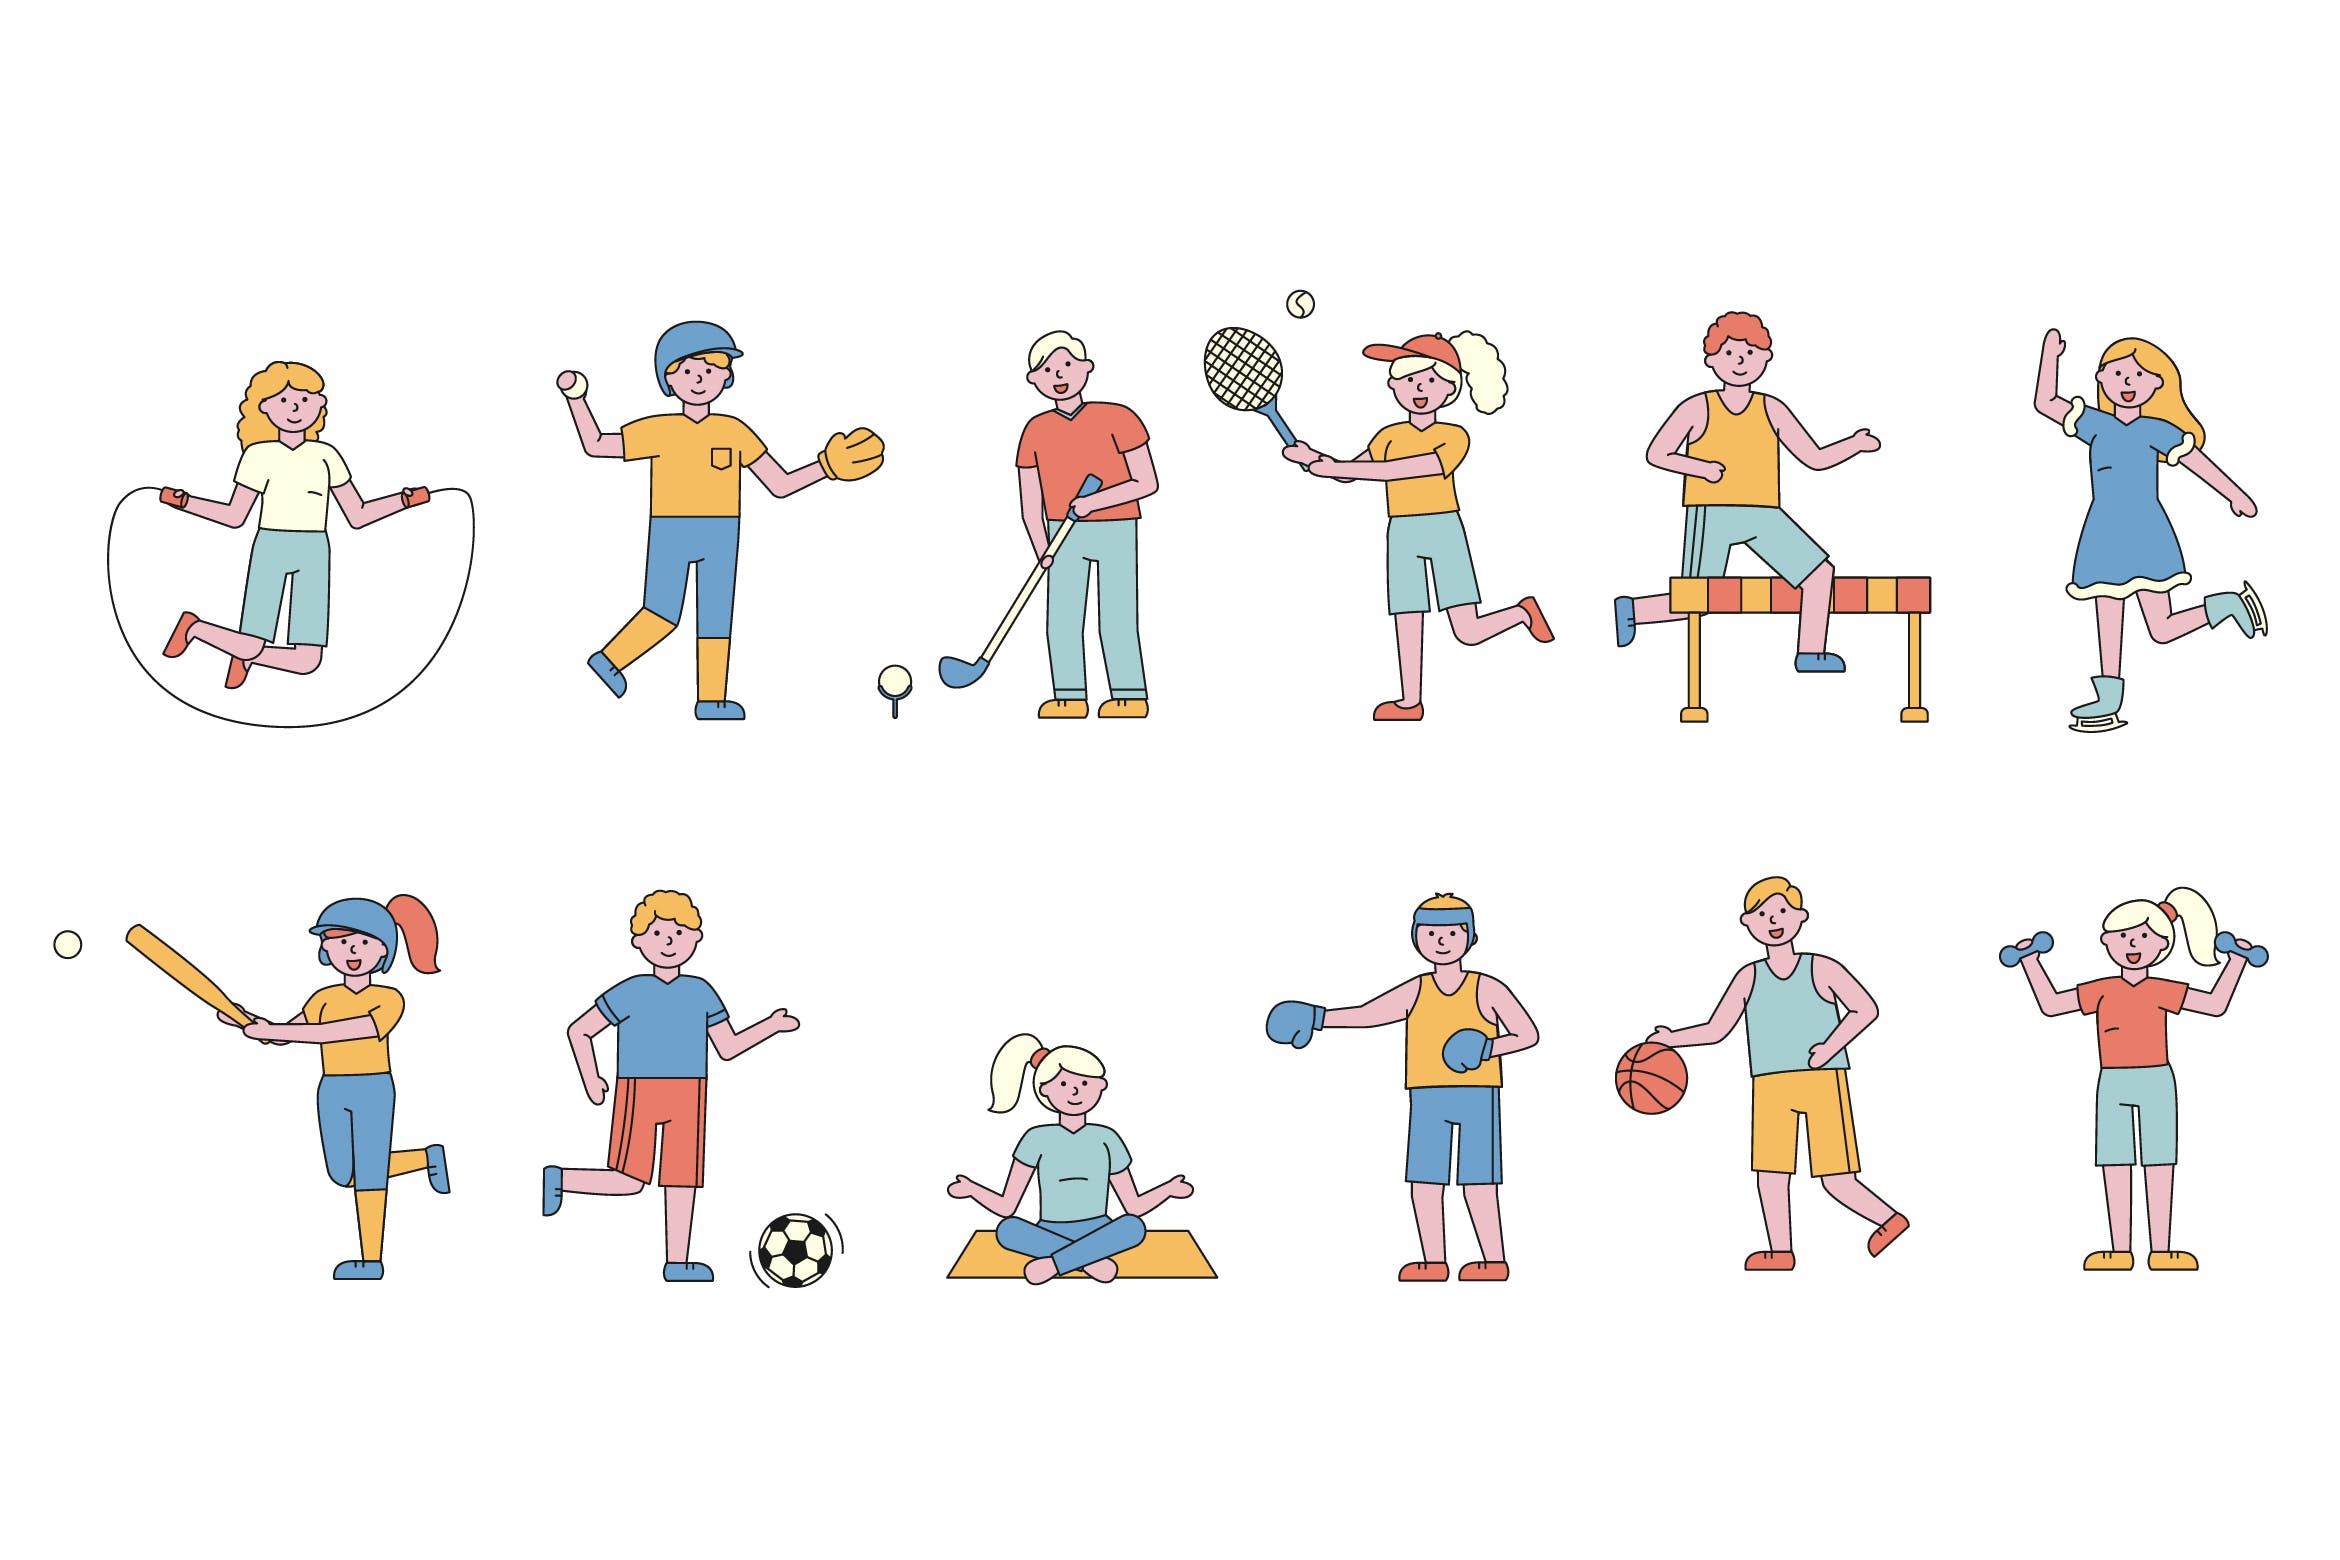 体育运动主题人物形象线条艺术矢量插画16设计网精选素材 Sportsmen Lineart People Character Collection插图